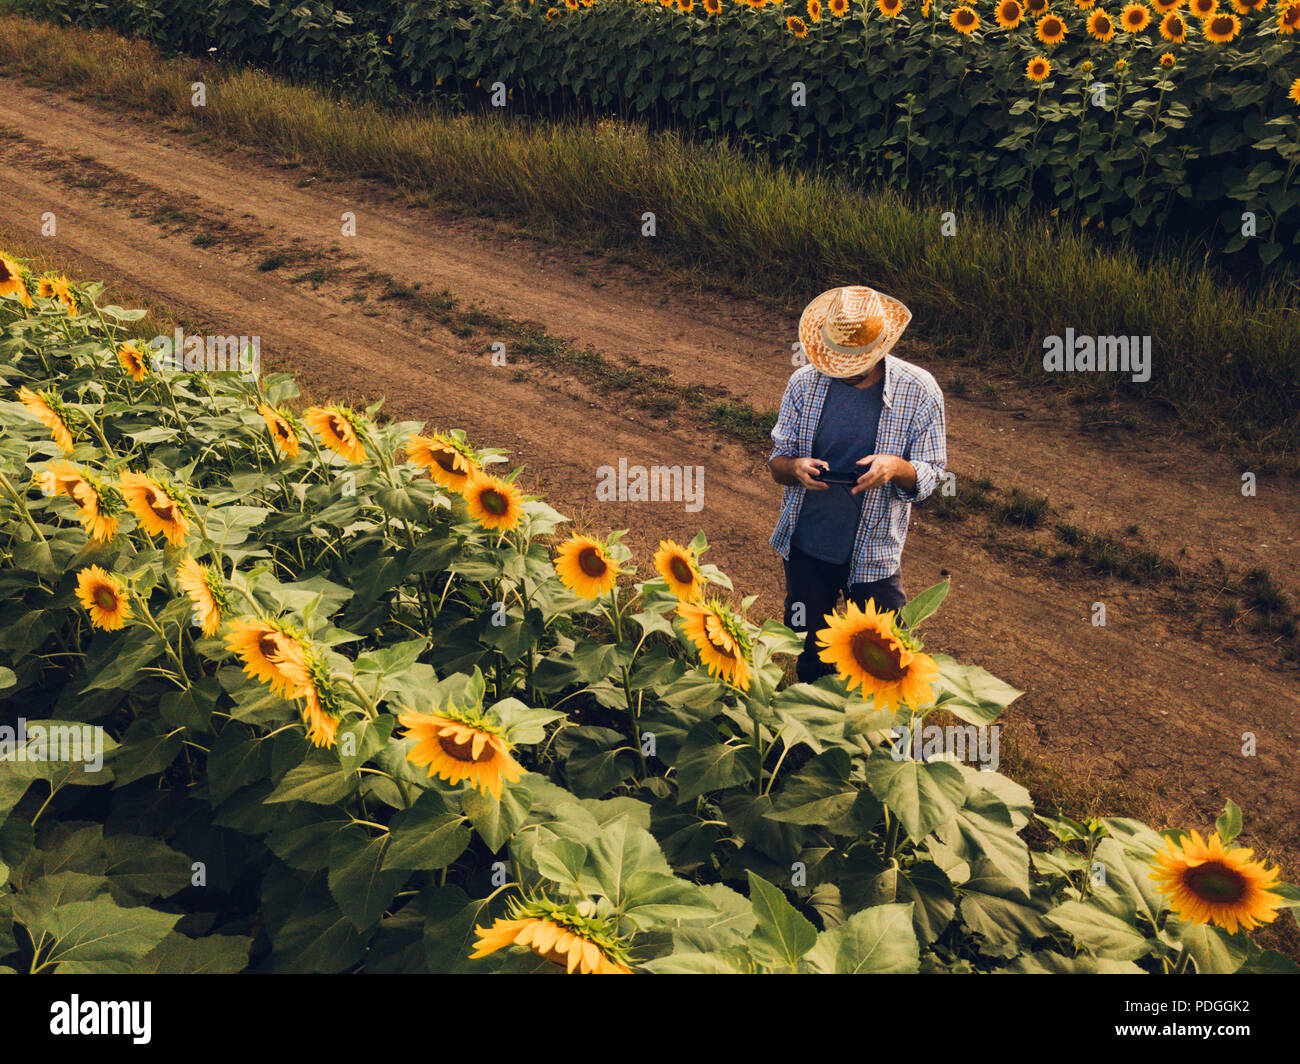 Landwirt Agronom mit Drohne zu prüfen, blühenden Sonnenblumen Pflanzen in Feld von oben, den Einsatz moderner Technologien in der Landwirtschaft und Lebensmittelproduktion i Stockfoto